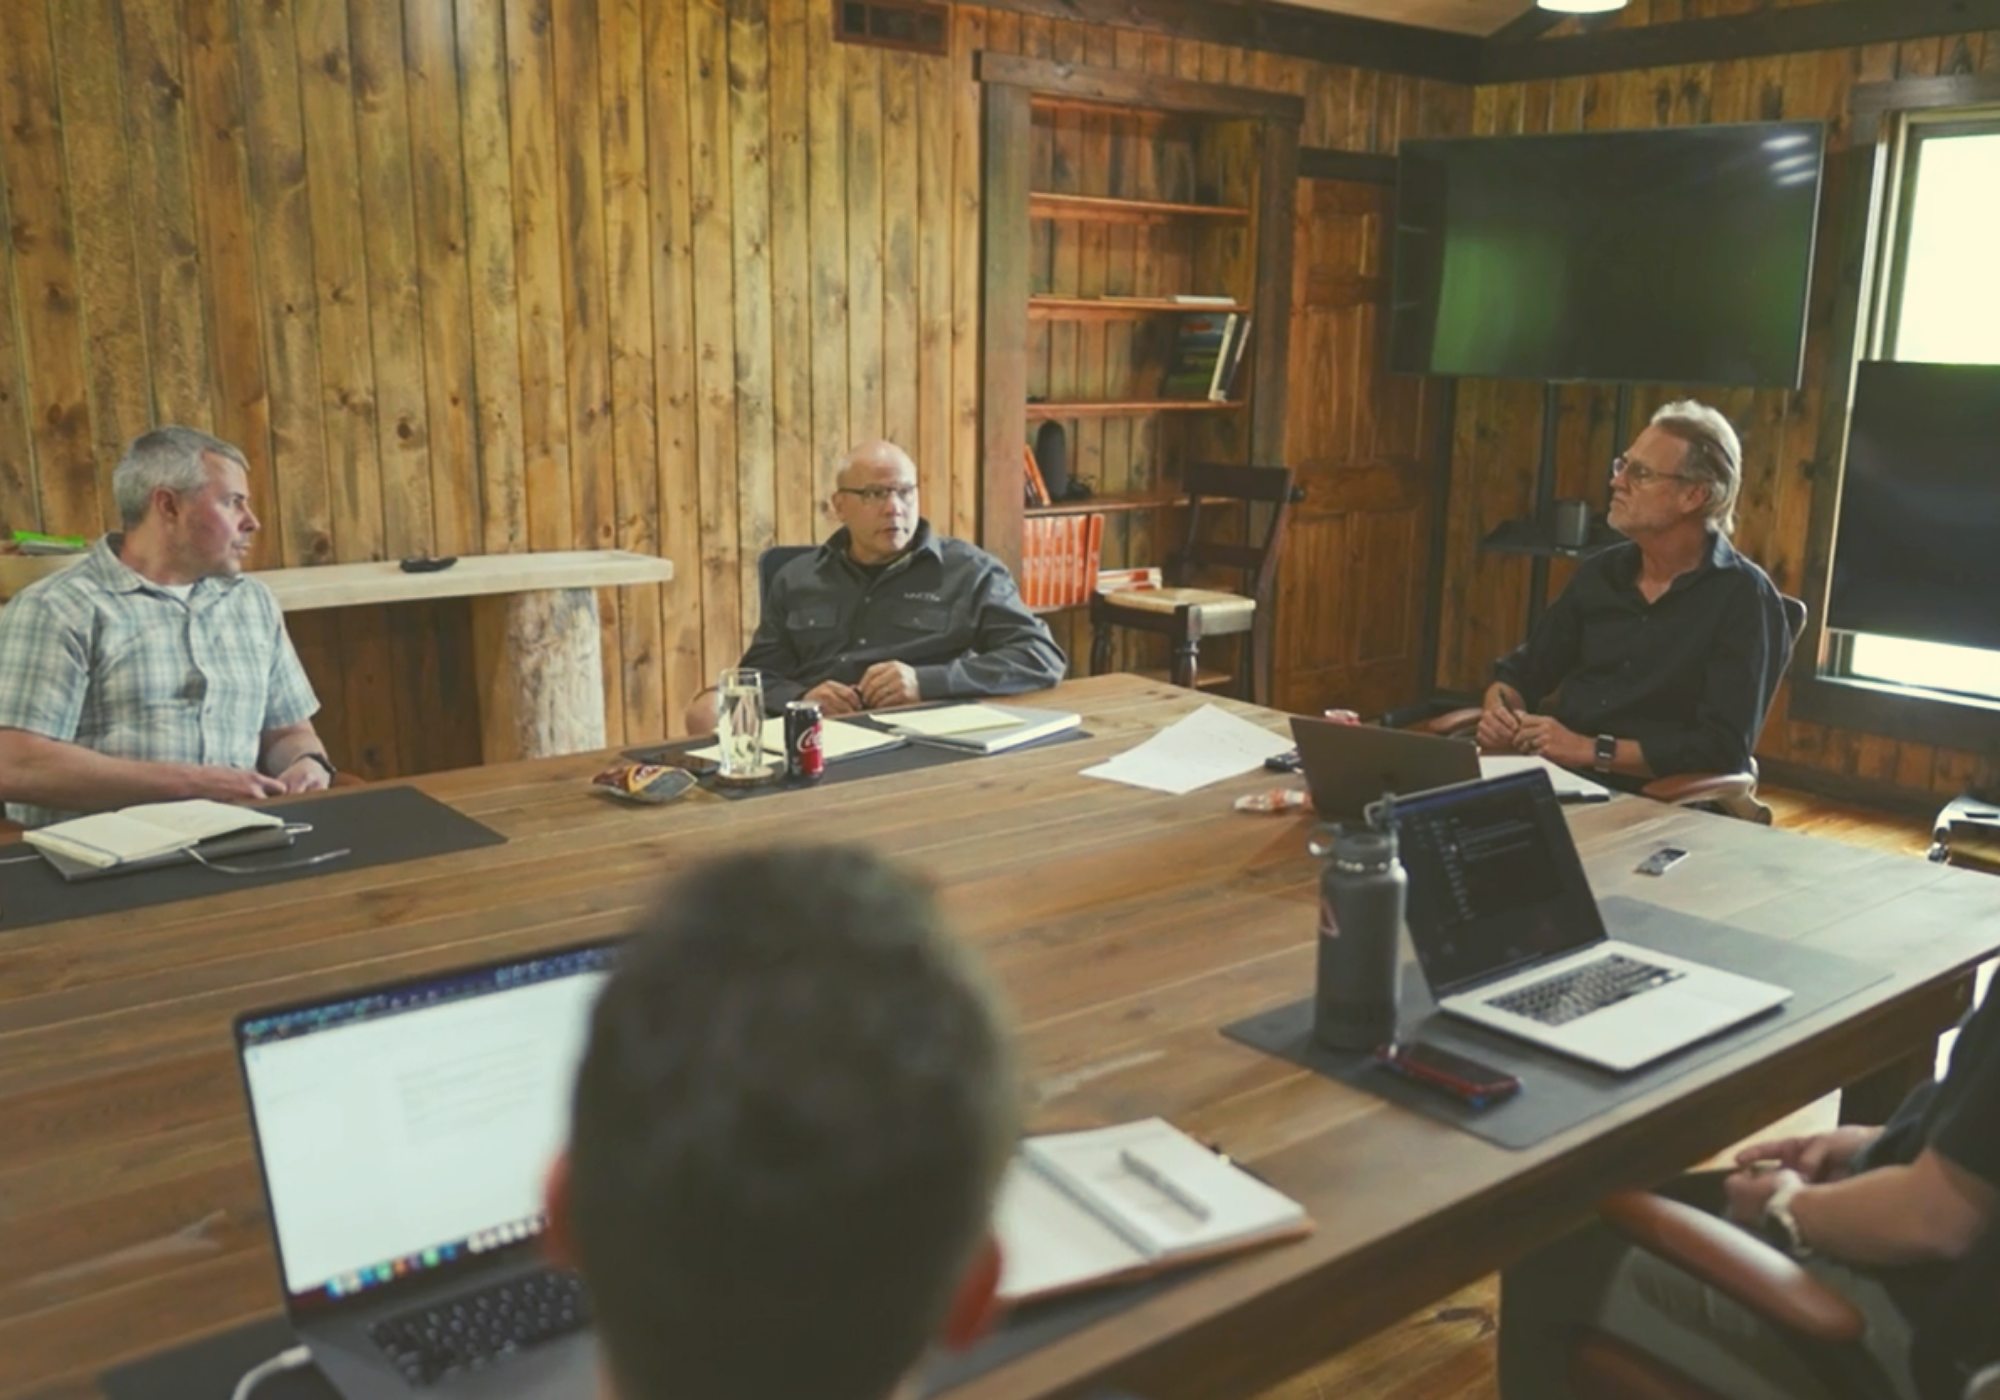 Weekly Team Meetings — Five People, Five Ideas